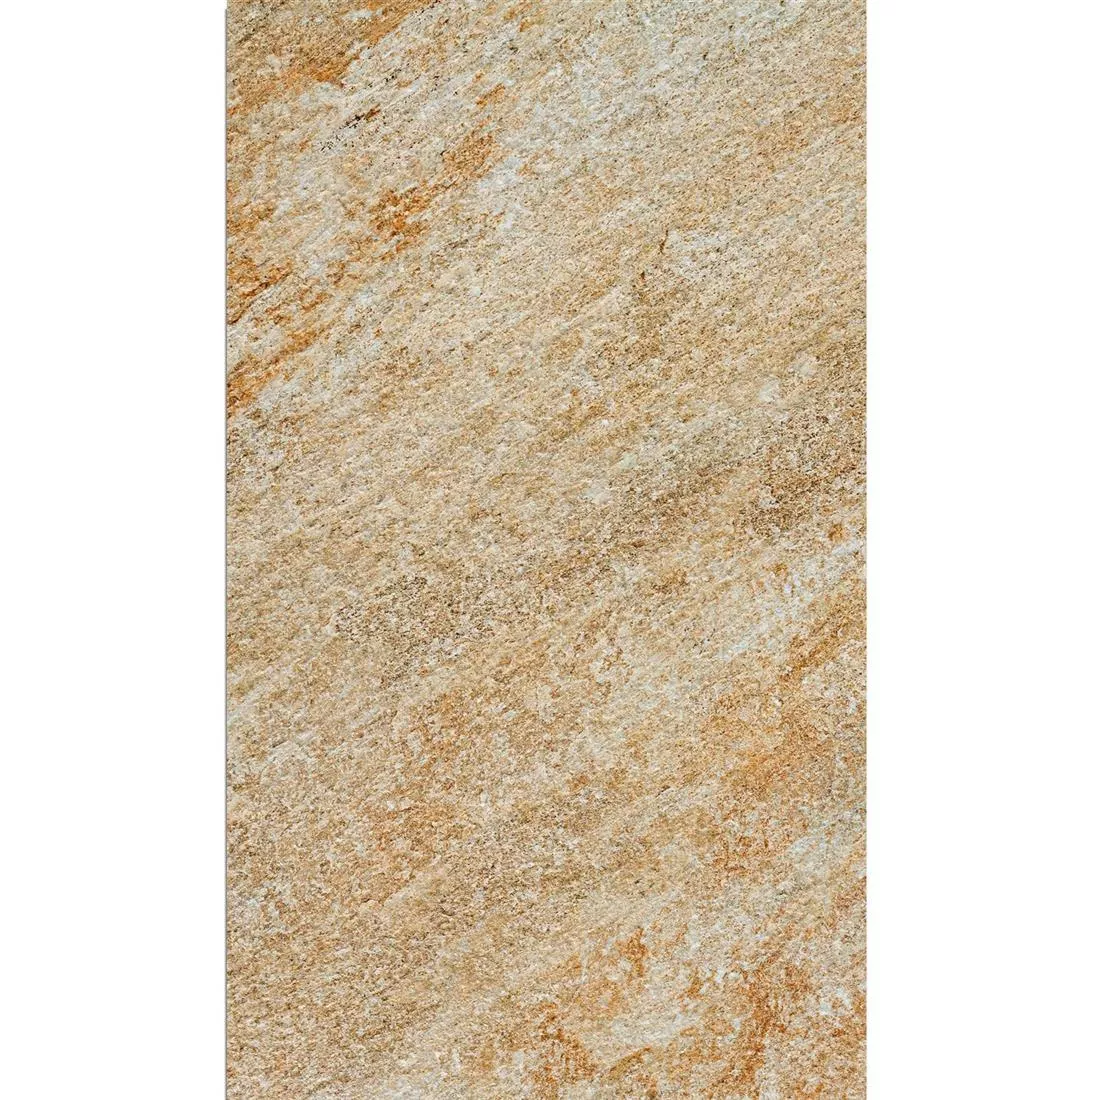 Ploče Za Terasu Stoneway Imitacija Prirodnog Kamena Bež 60x90cm